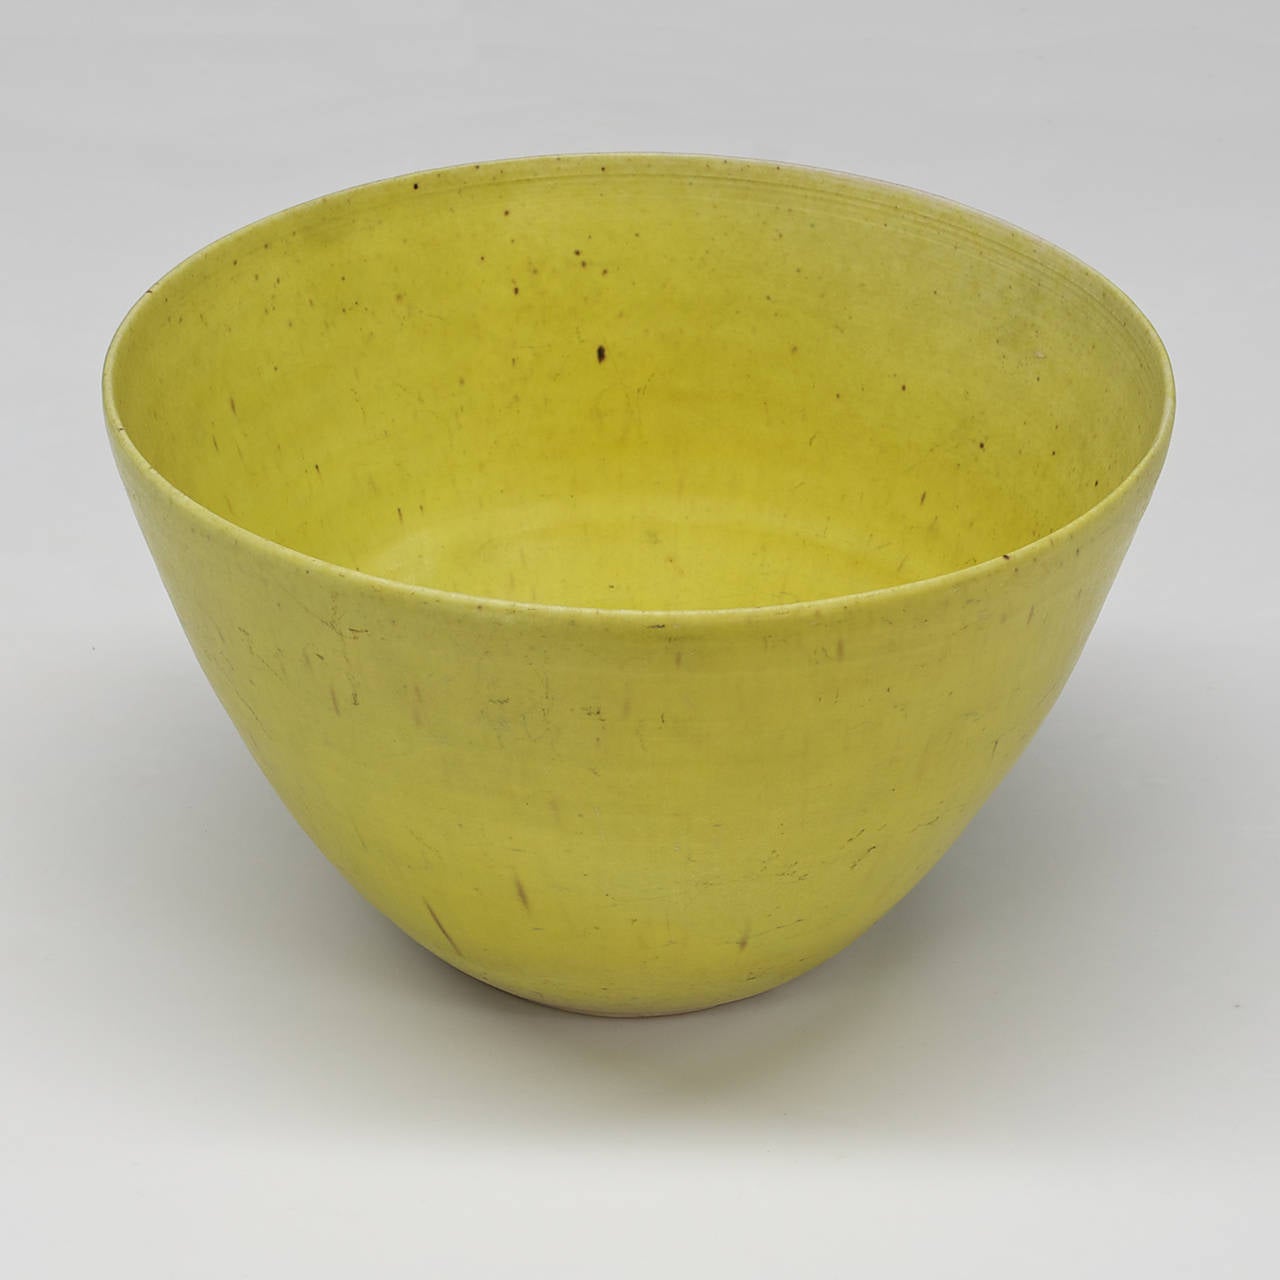 Edith Heath (1911-2005) a fondé Heath Ceramics, à Sausalito, en Californie, en 1948, après son exposition solo de poterie à la Légion d'honneur de San Francisco. Extrêmement rares, très peu d'exemples de son travail de studio existent en dehors des